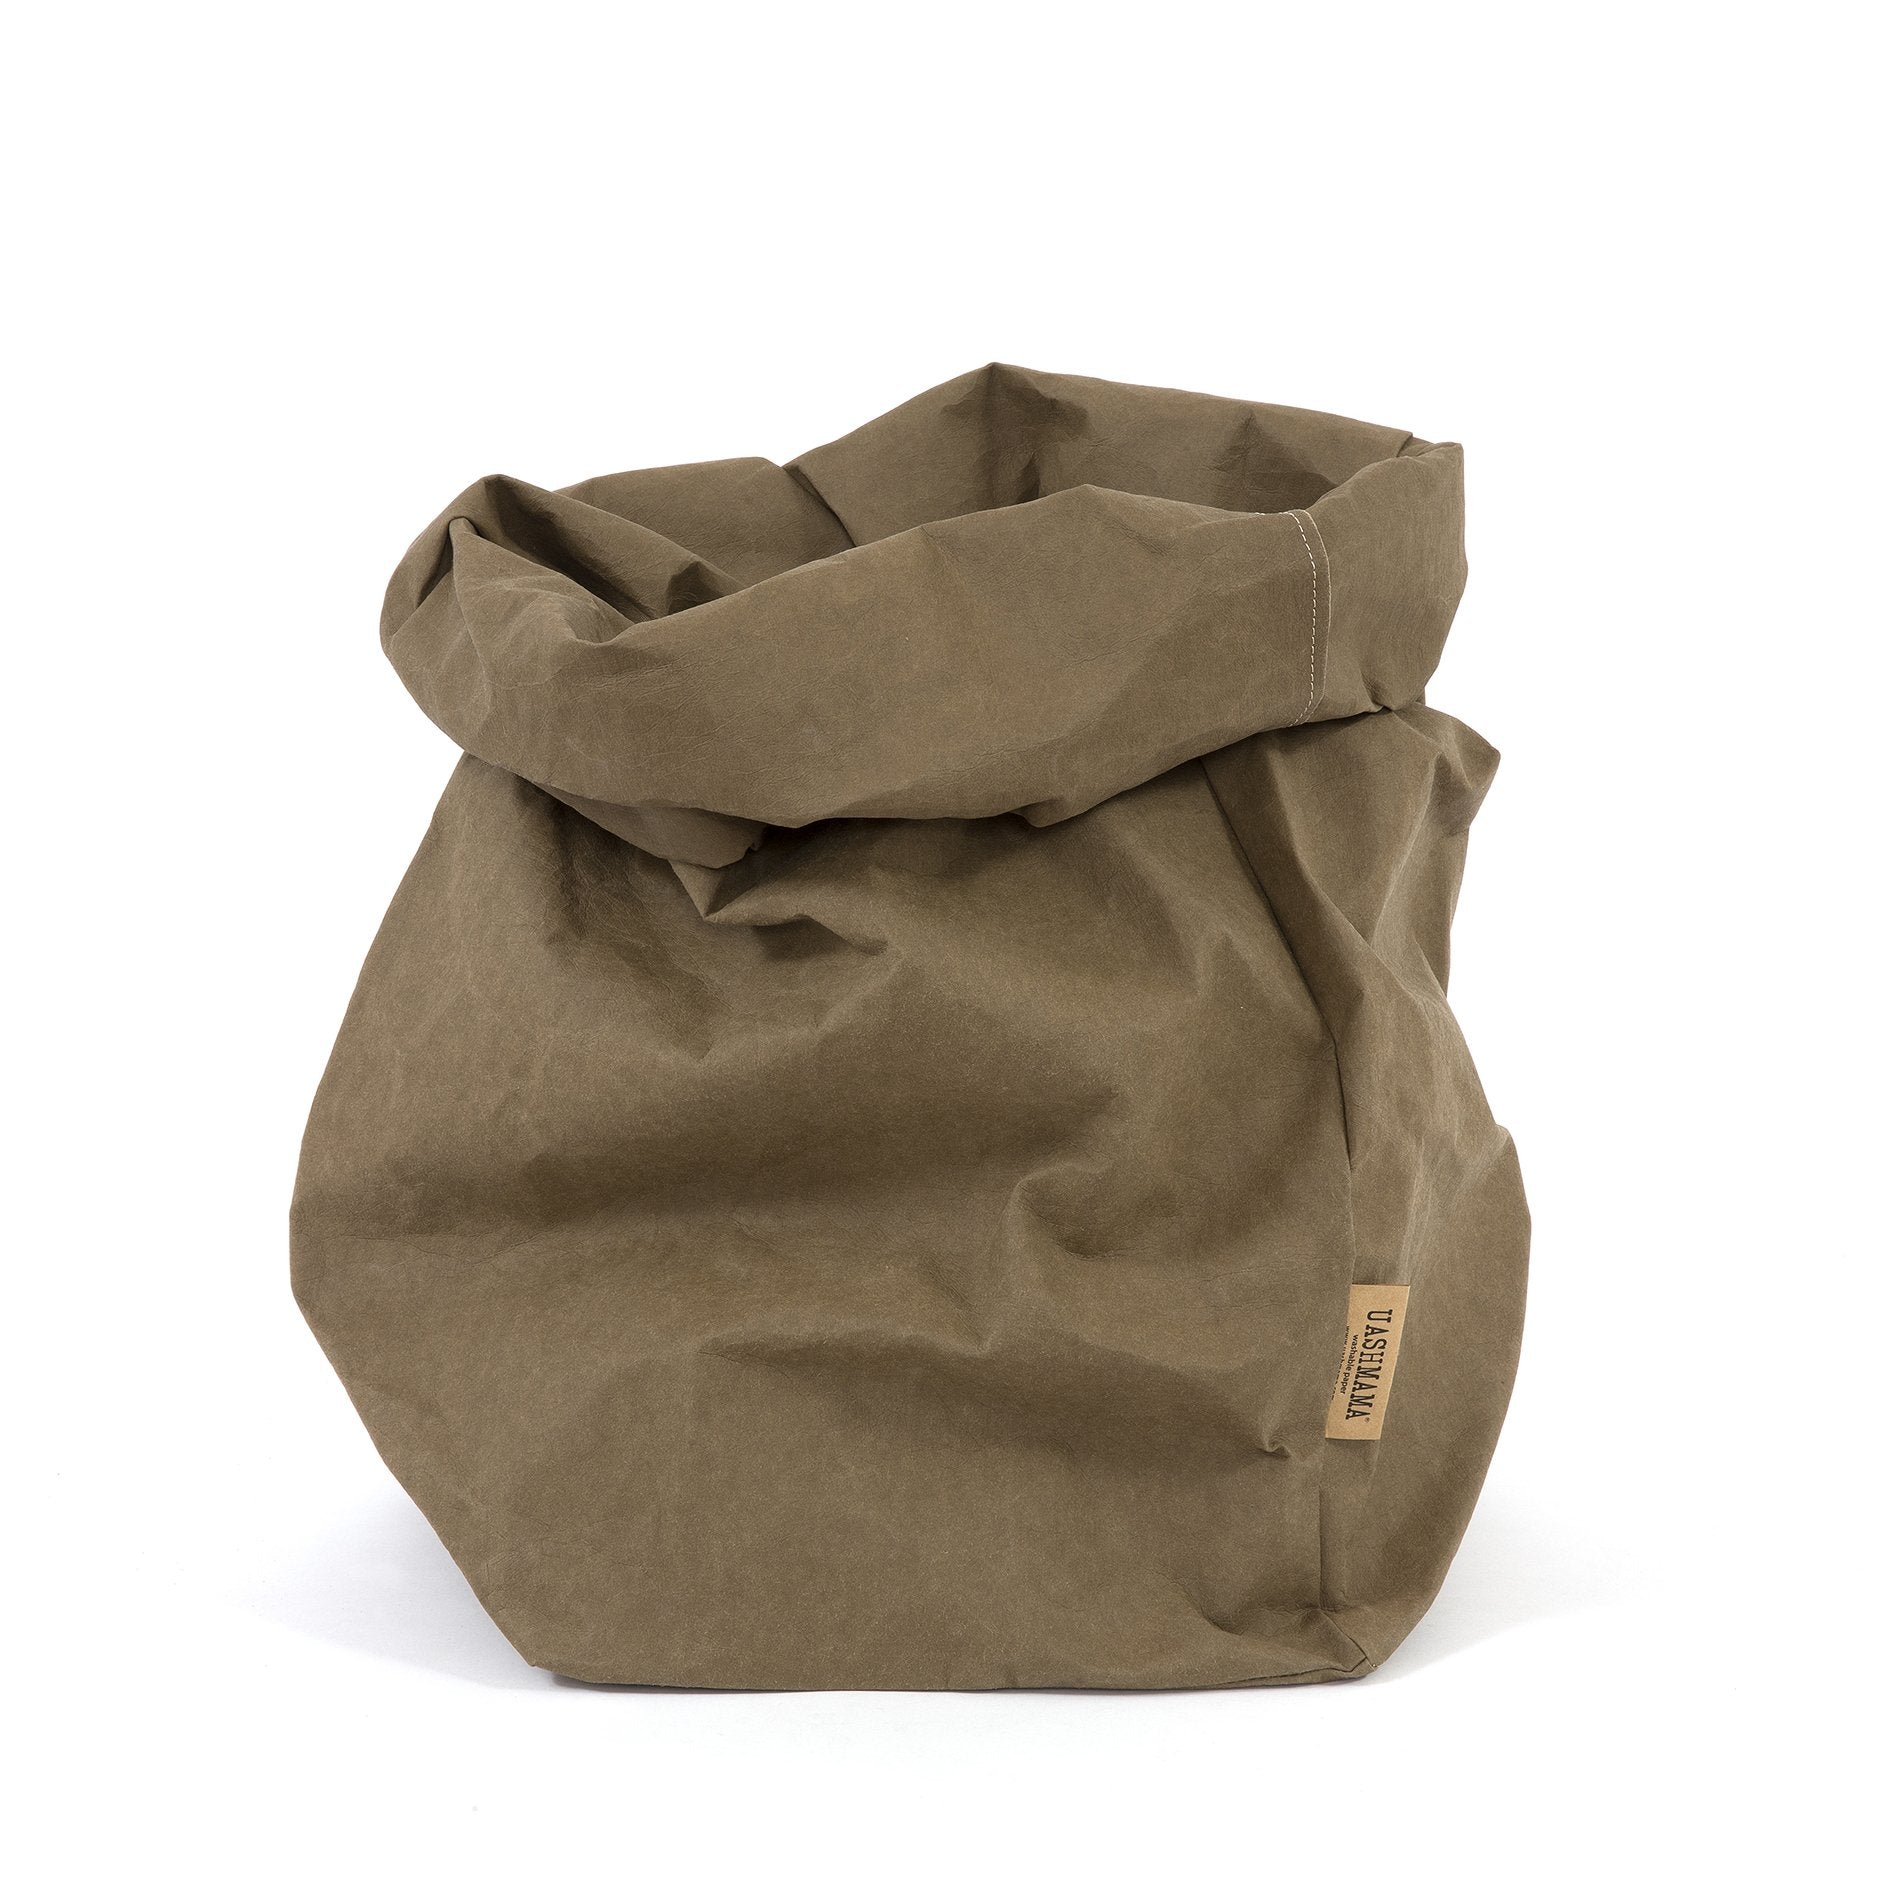 Uashmama Paper Bag Extra Large, Planter/Toys/Laundry